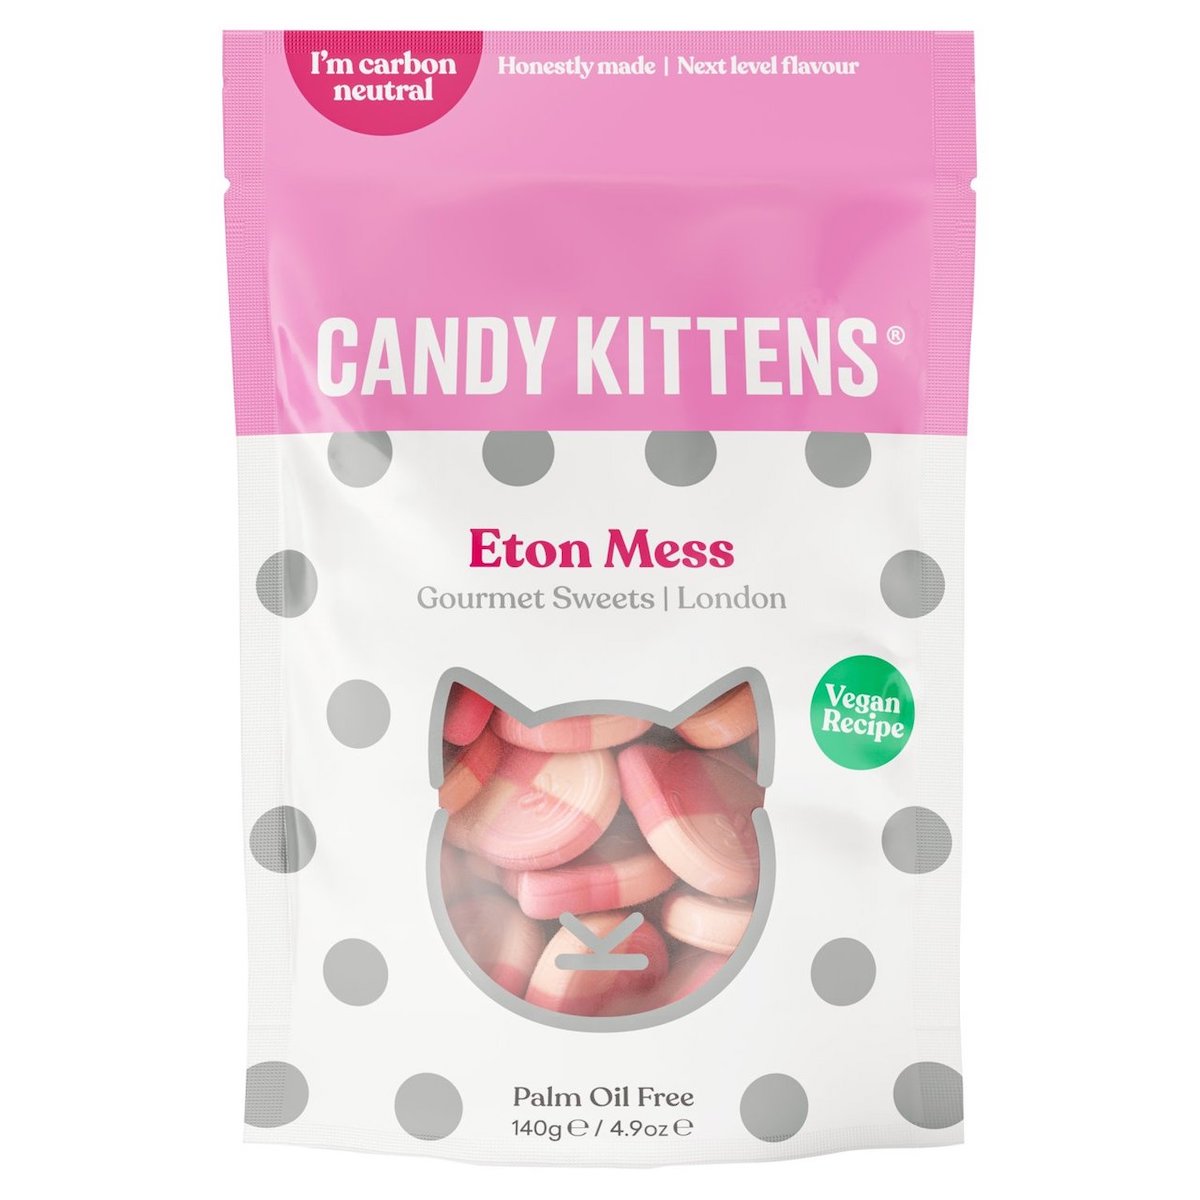 Guletn Free Candy Kittens Eton Mess Bag 140g in UK